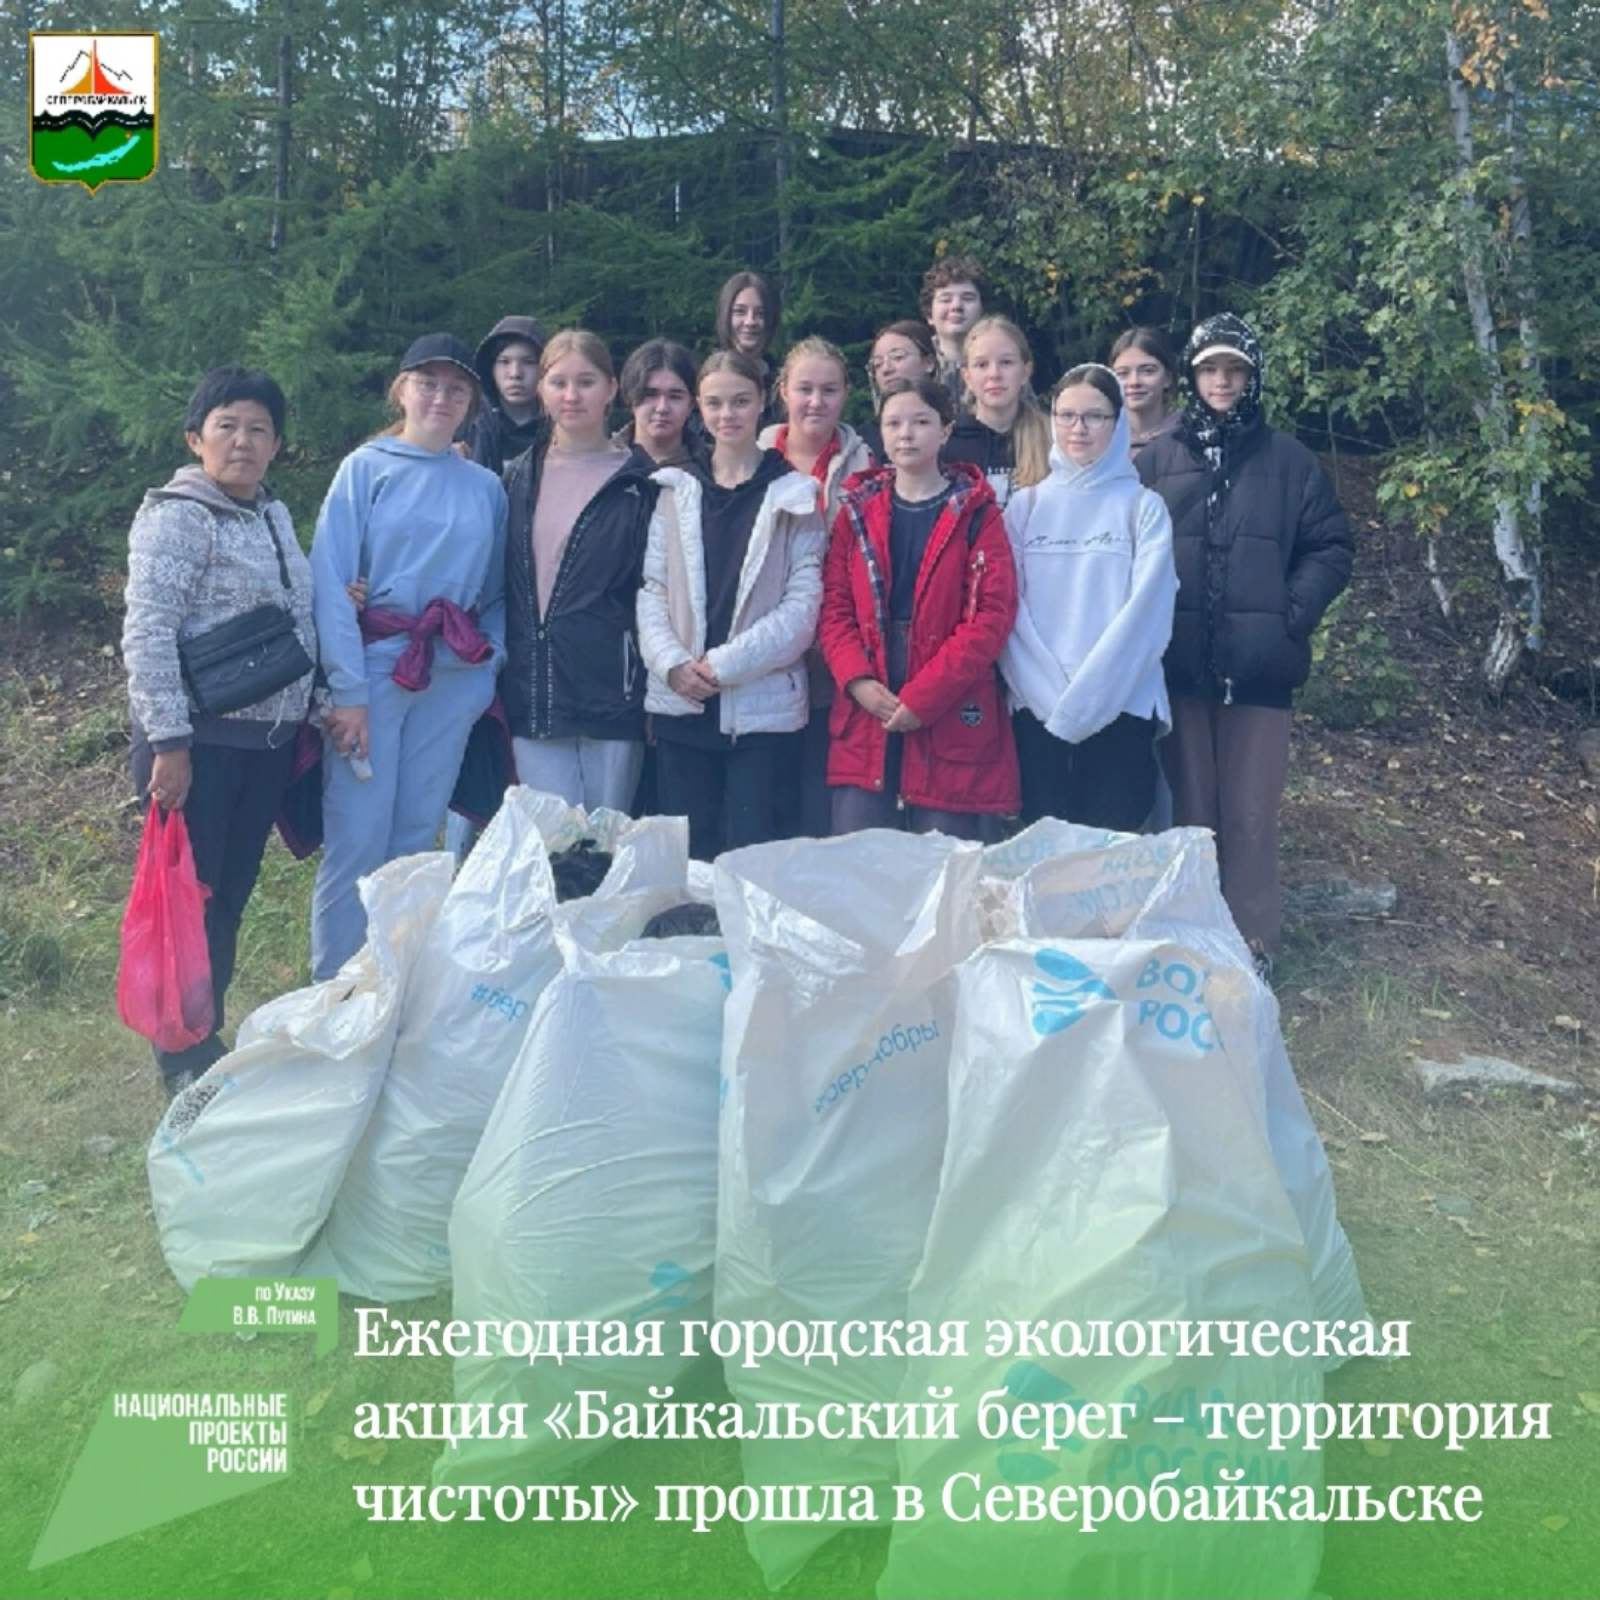 Ежегодная городская экологическая акция «Байкальский берег – территория чистоты» прошла в Северобайкальске.